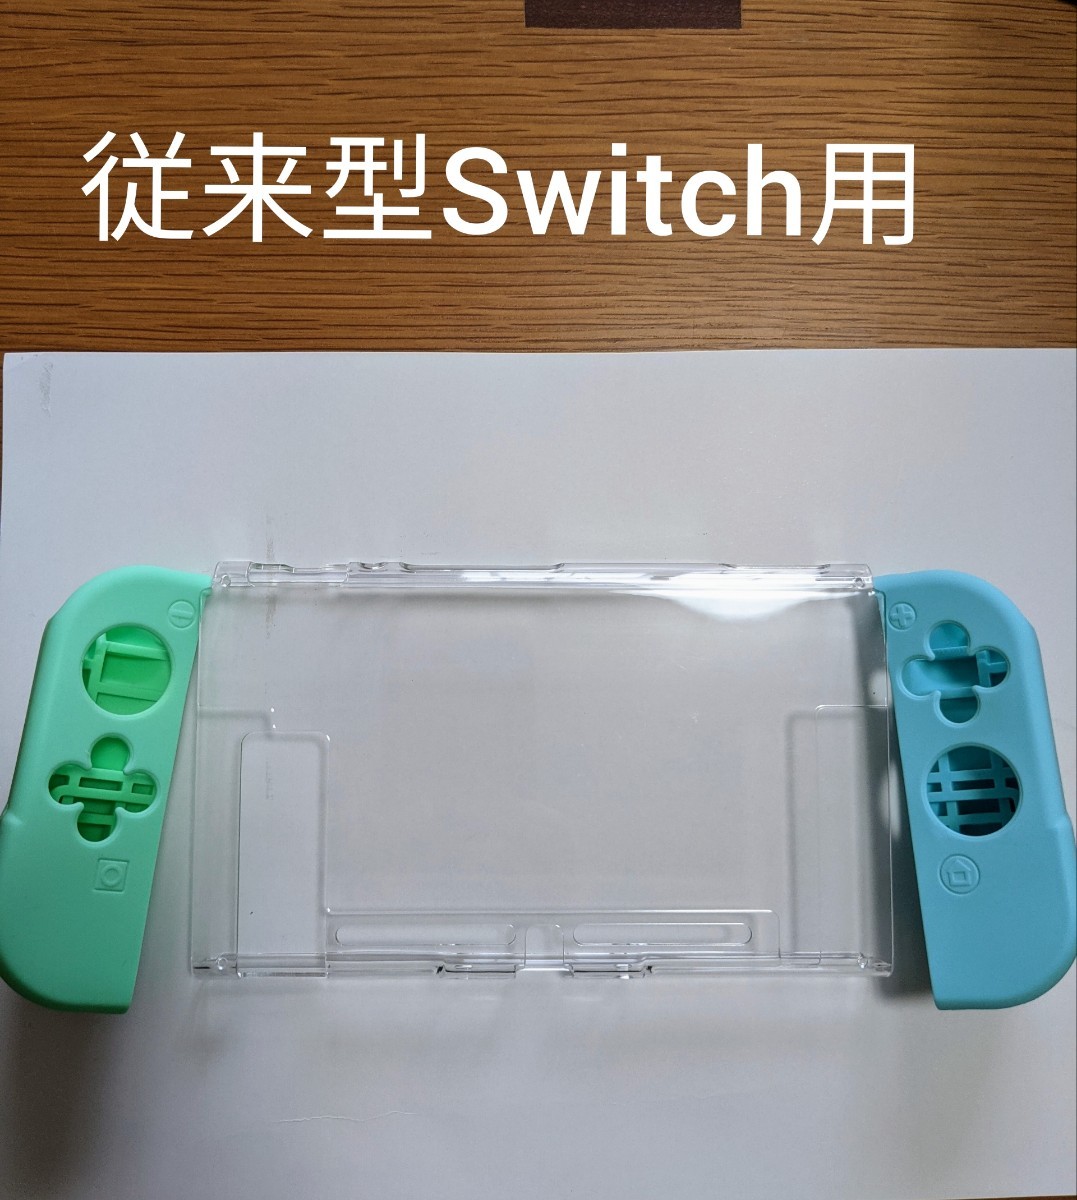 【Switch】新型有機ELモデルSwitch用ケースセット【おまけ付き】